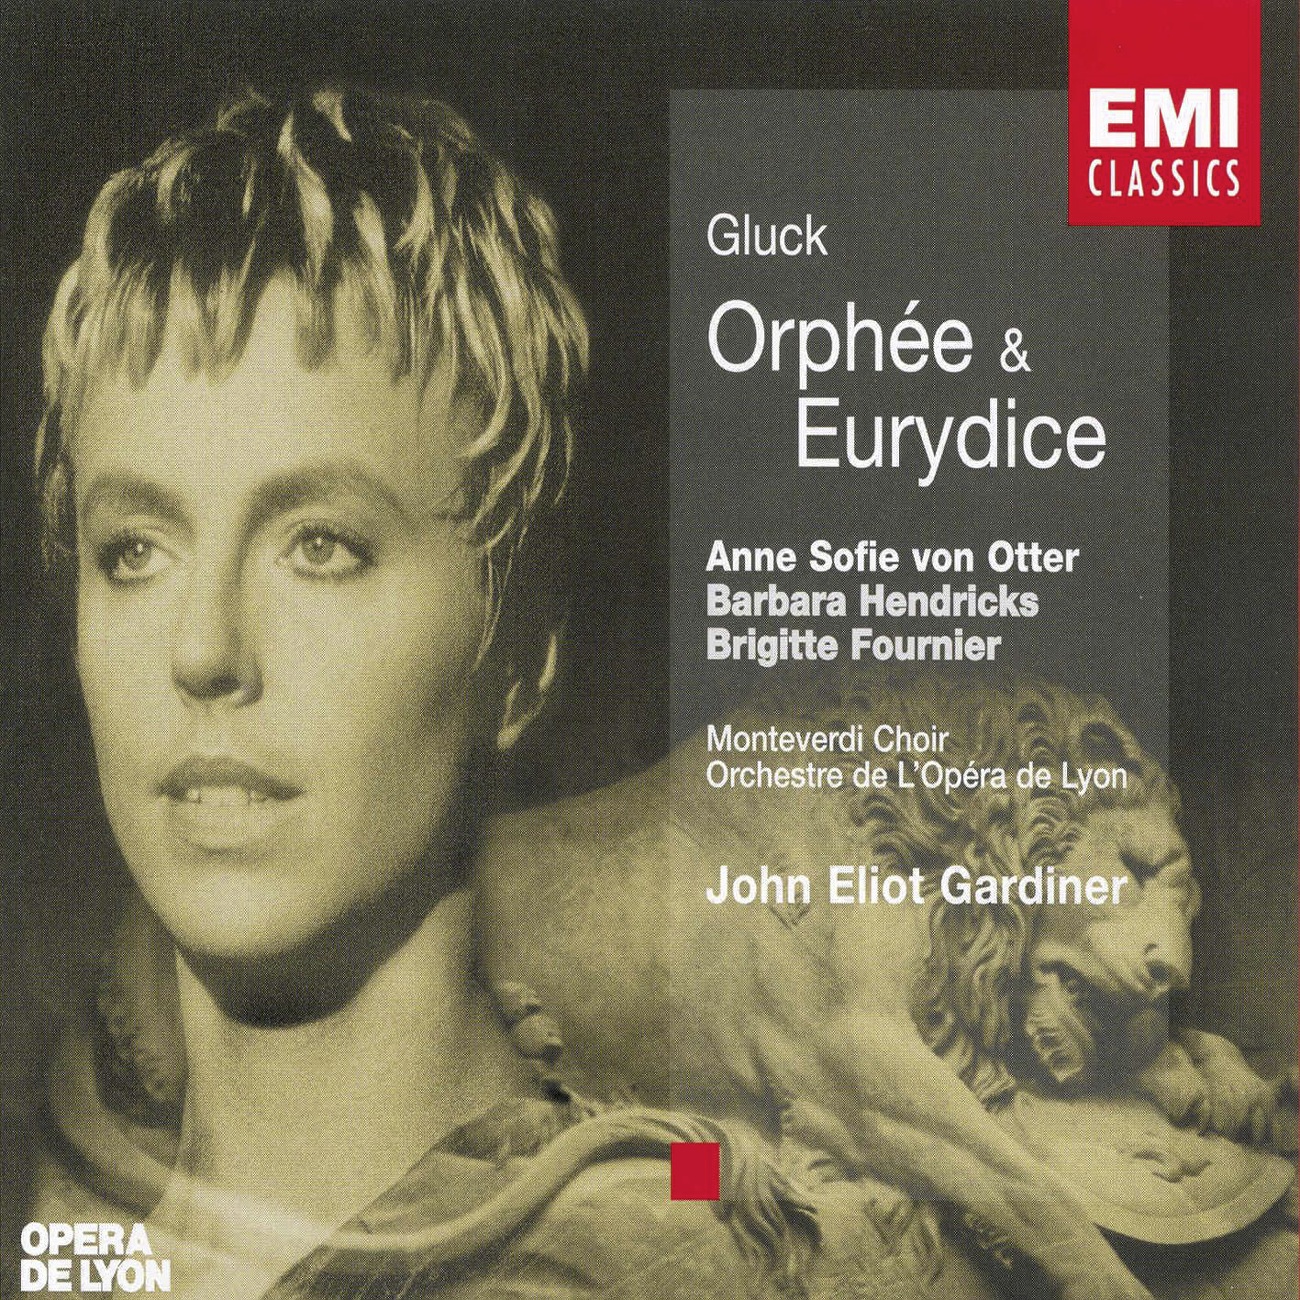 Orphe e et Eurydice, ACT 1, Sce ne 2 Orphe e: Air: Object de mon amour